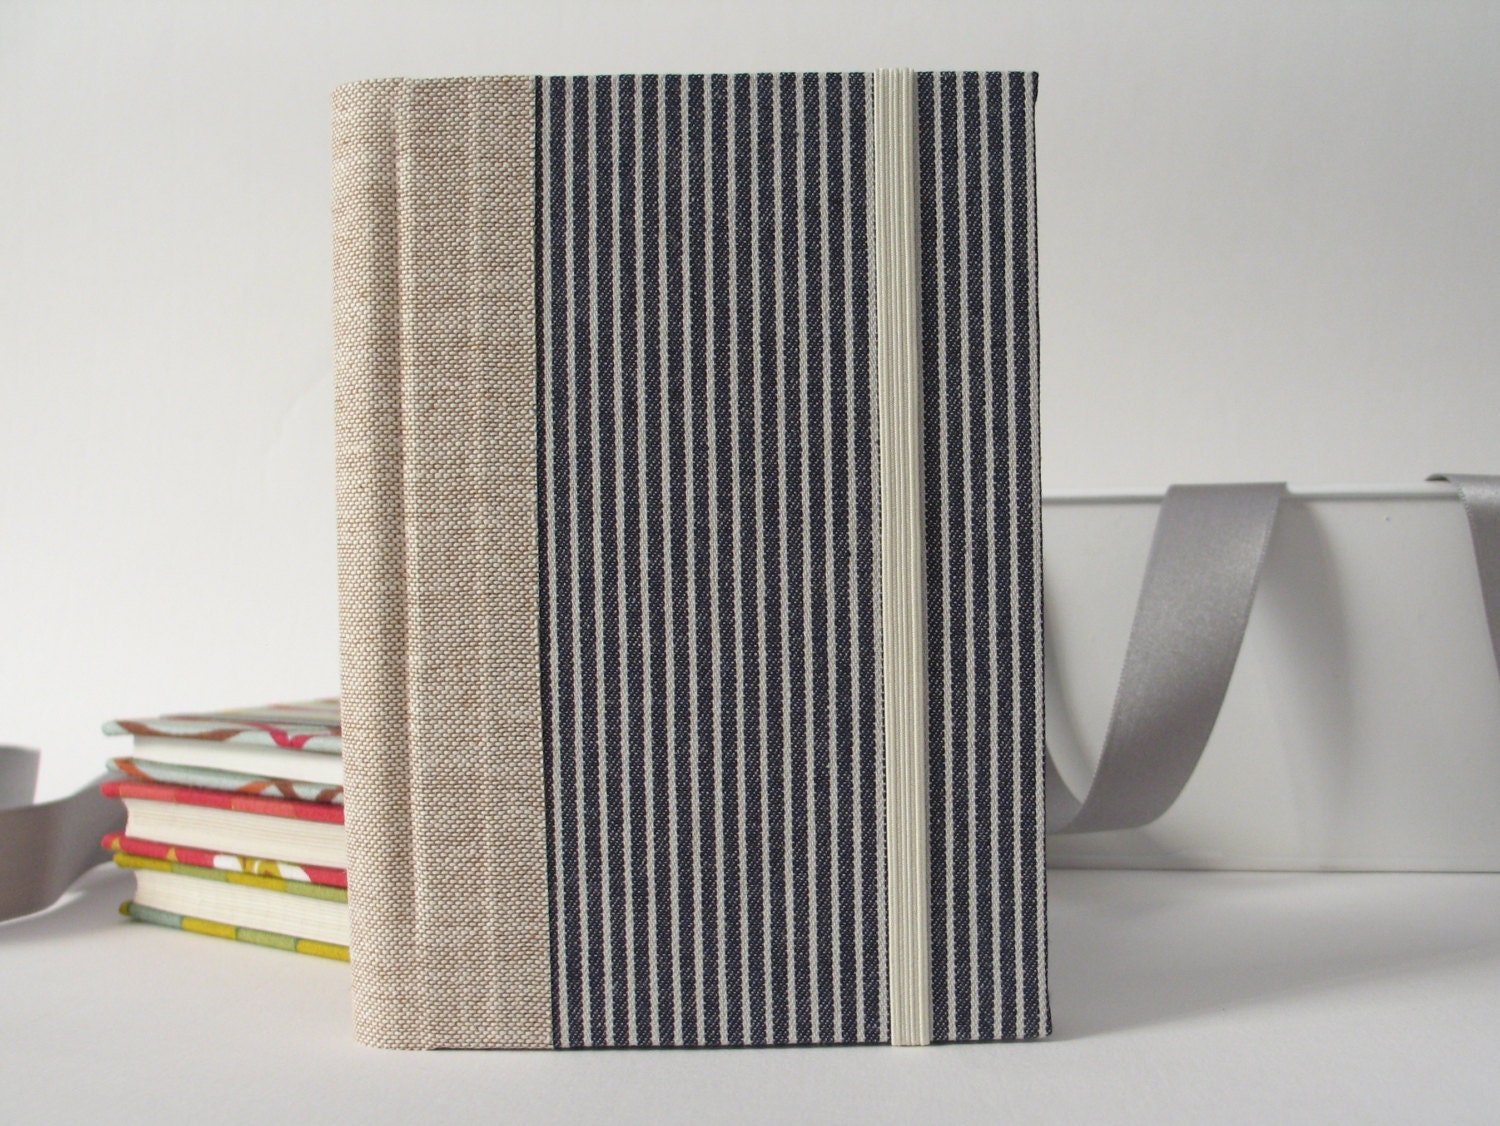 2014 Small Handmade Medium Stripes Weekly Planner by ArteeeLuarBookbinding